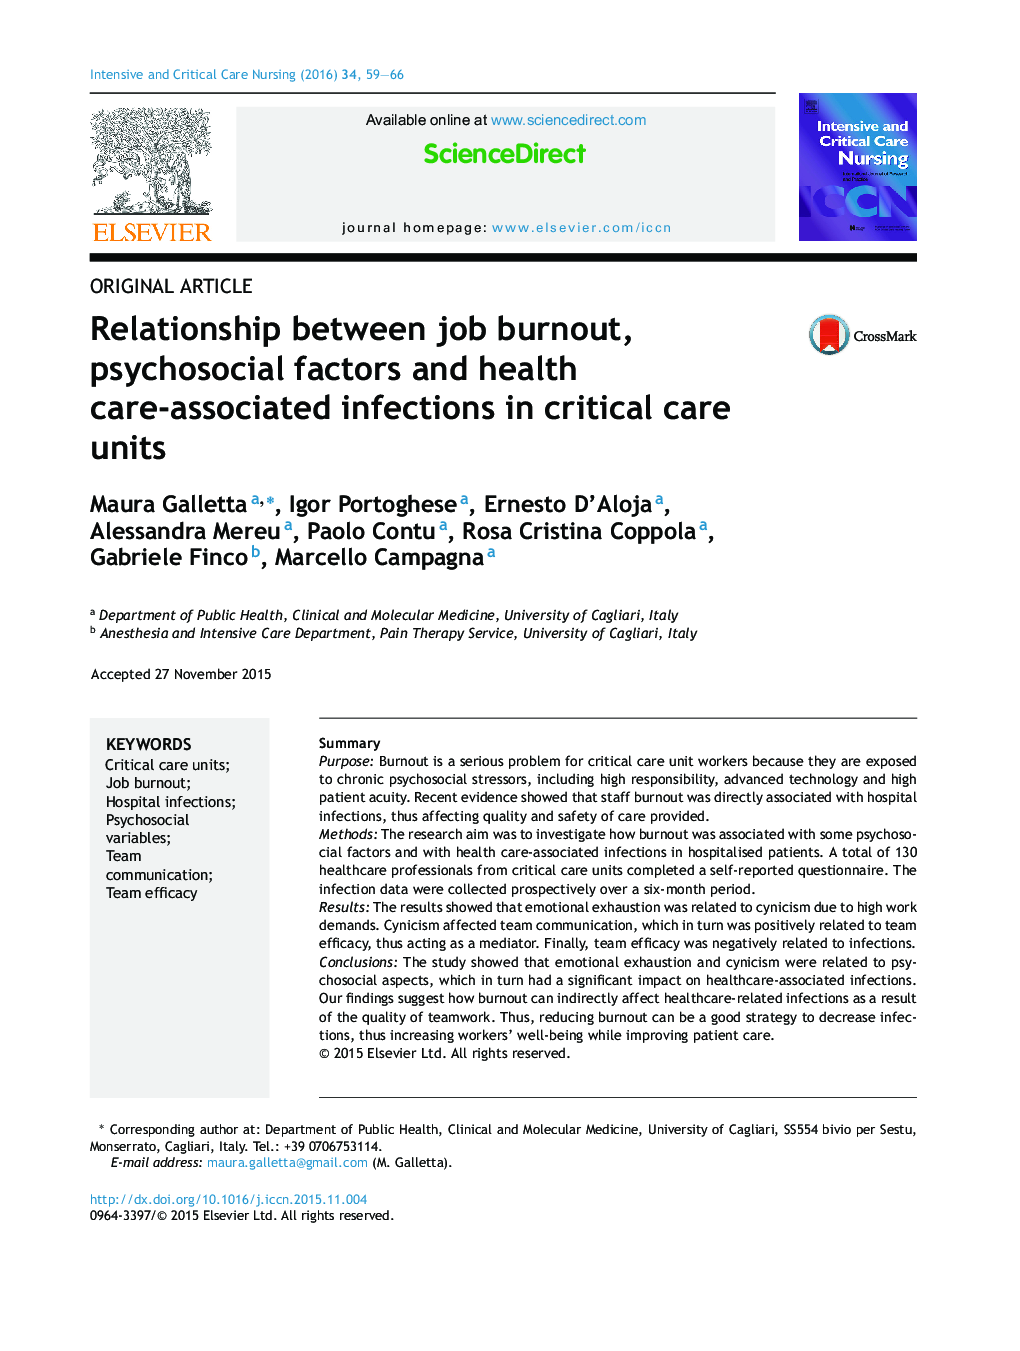 رابطه بین فرسودگی شغلی، عوامل روانی اجتماعی و عفونت های مرتبط با مراقبت بهداشتی در واحد مراقبت های ویژه